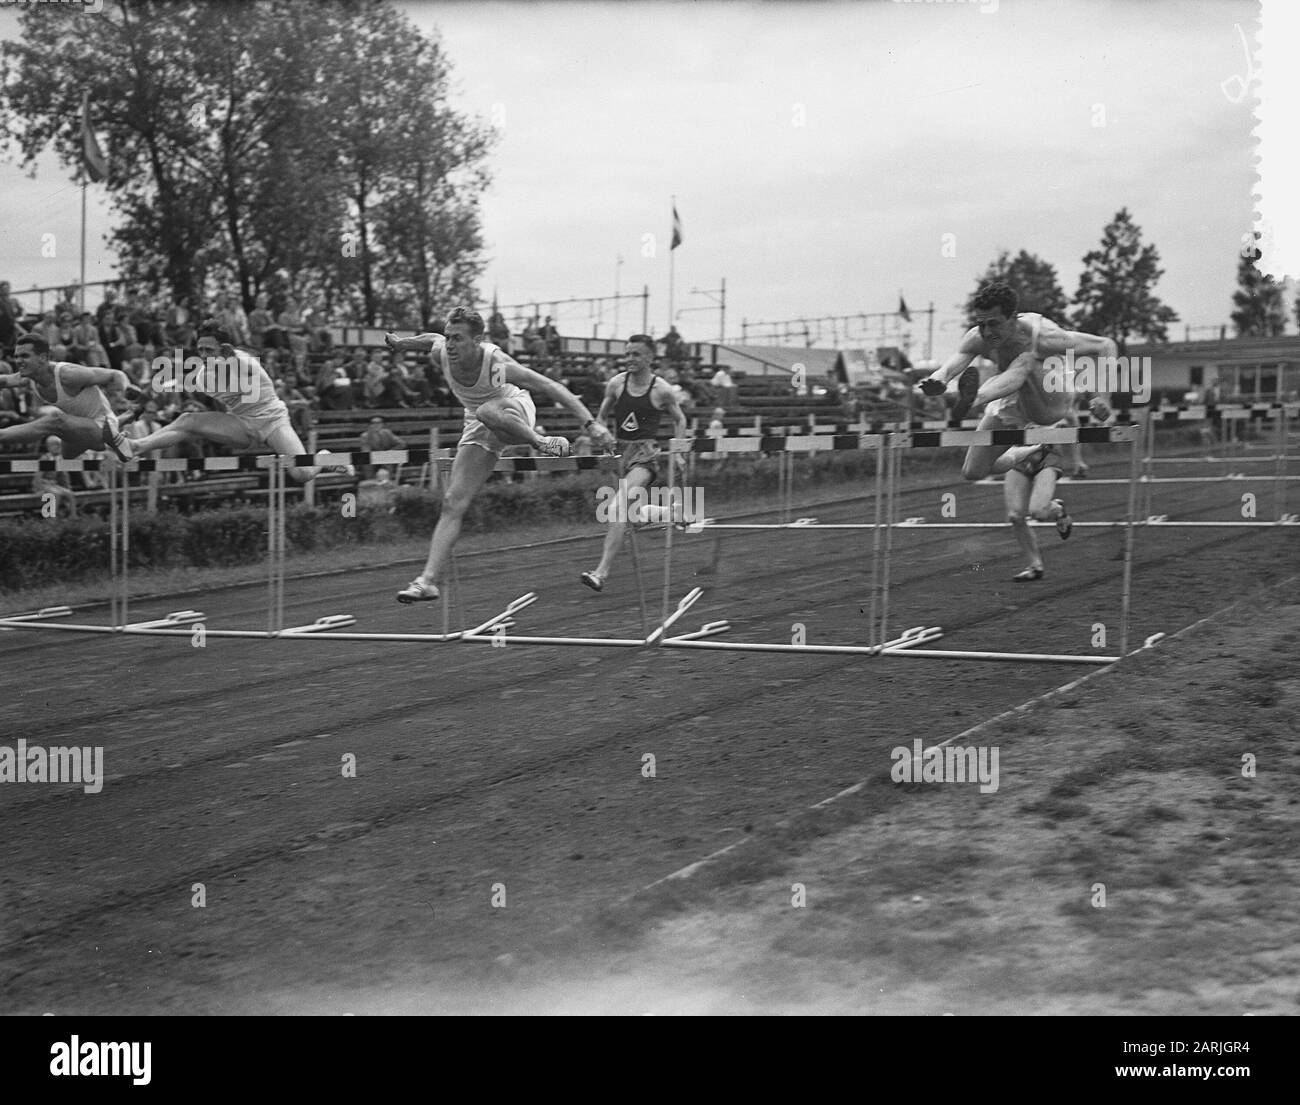 Internationaler Leichtathletik-Wettbewerb Pro Patria Rotterdam, 110 m Hürden Männer Datum: 3. Juli 1955 Ort: Rotterdam, Zuid-Holland Schlagwörter: Leichtathletik, Sportname: Pro Patria Stockfoto